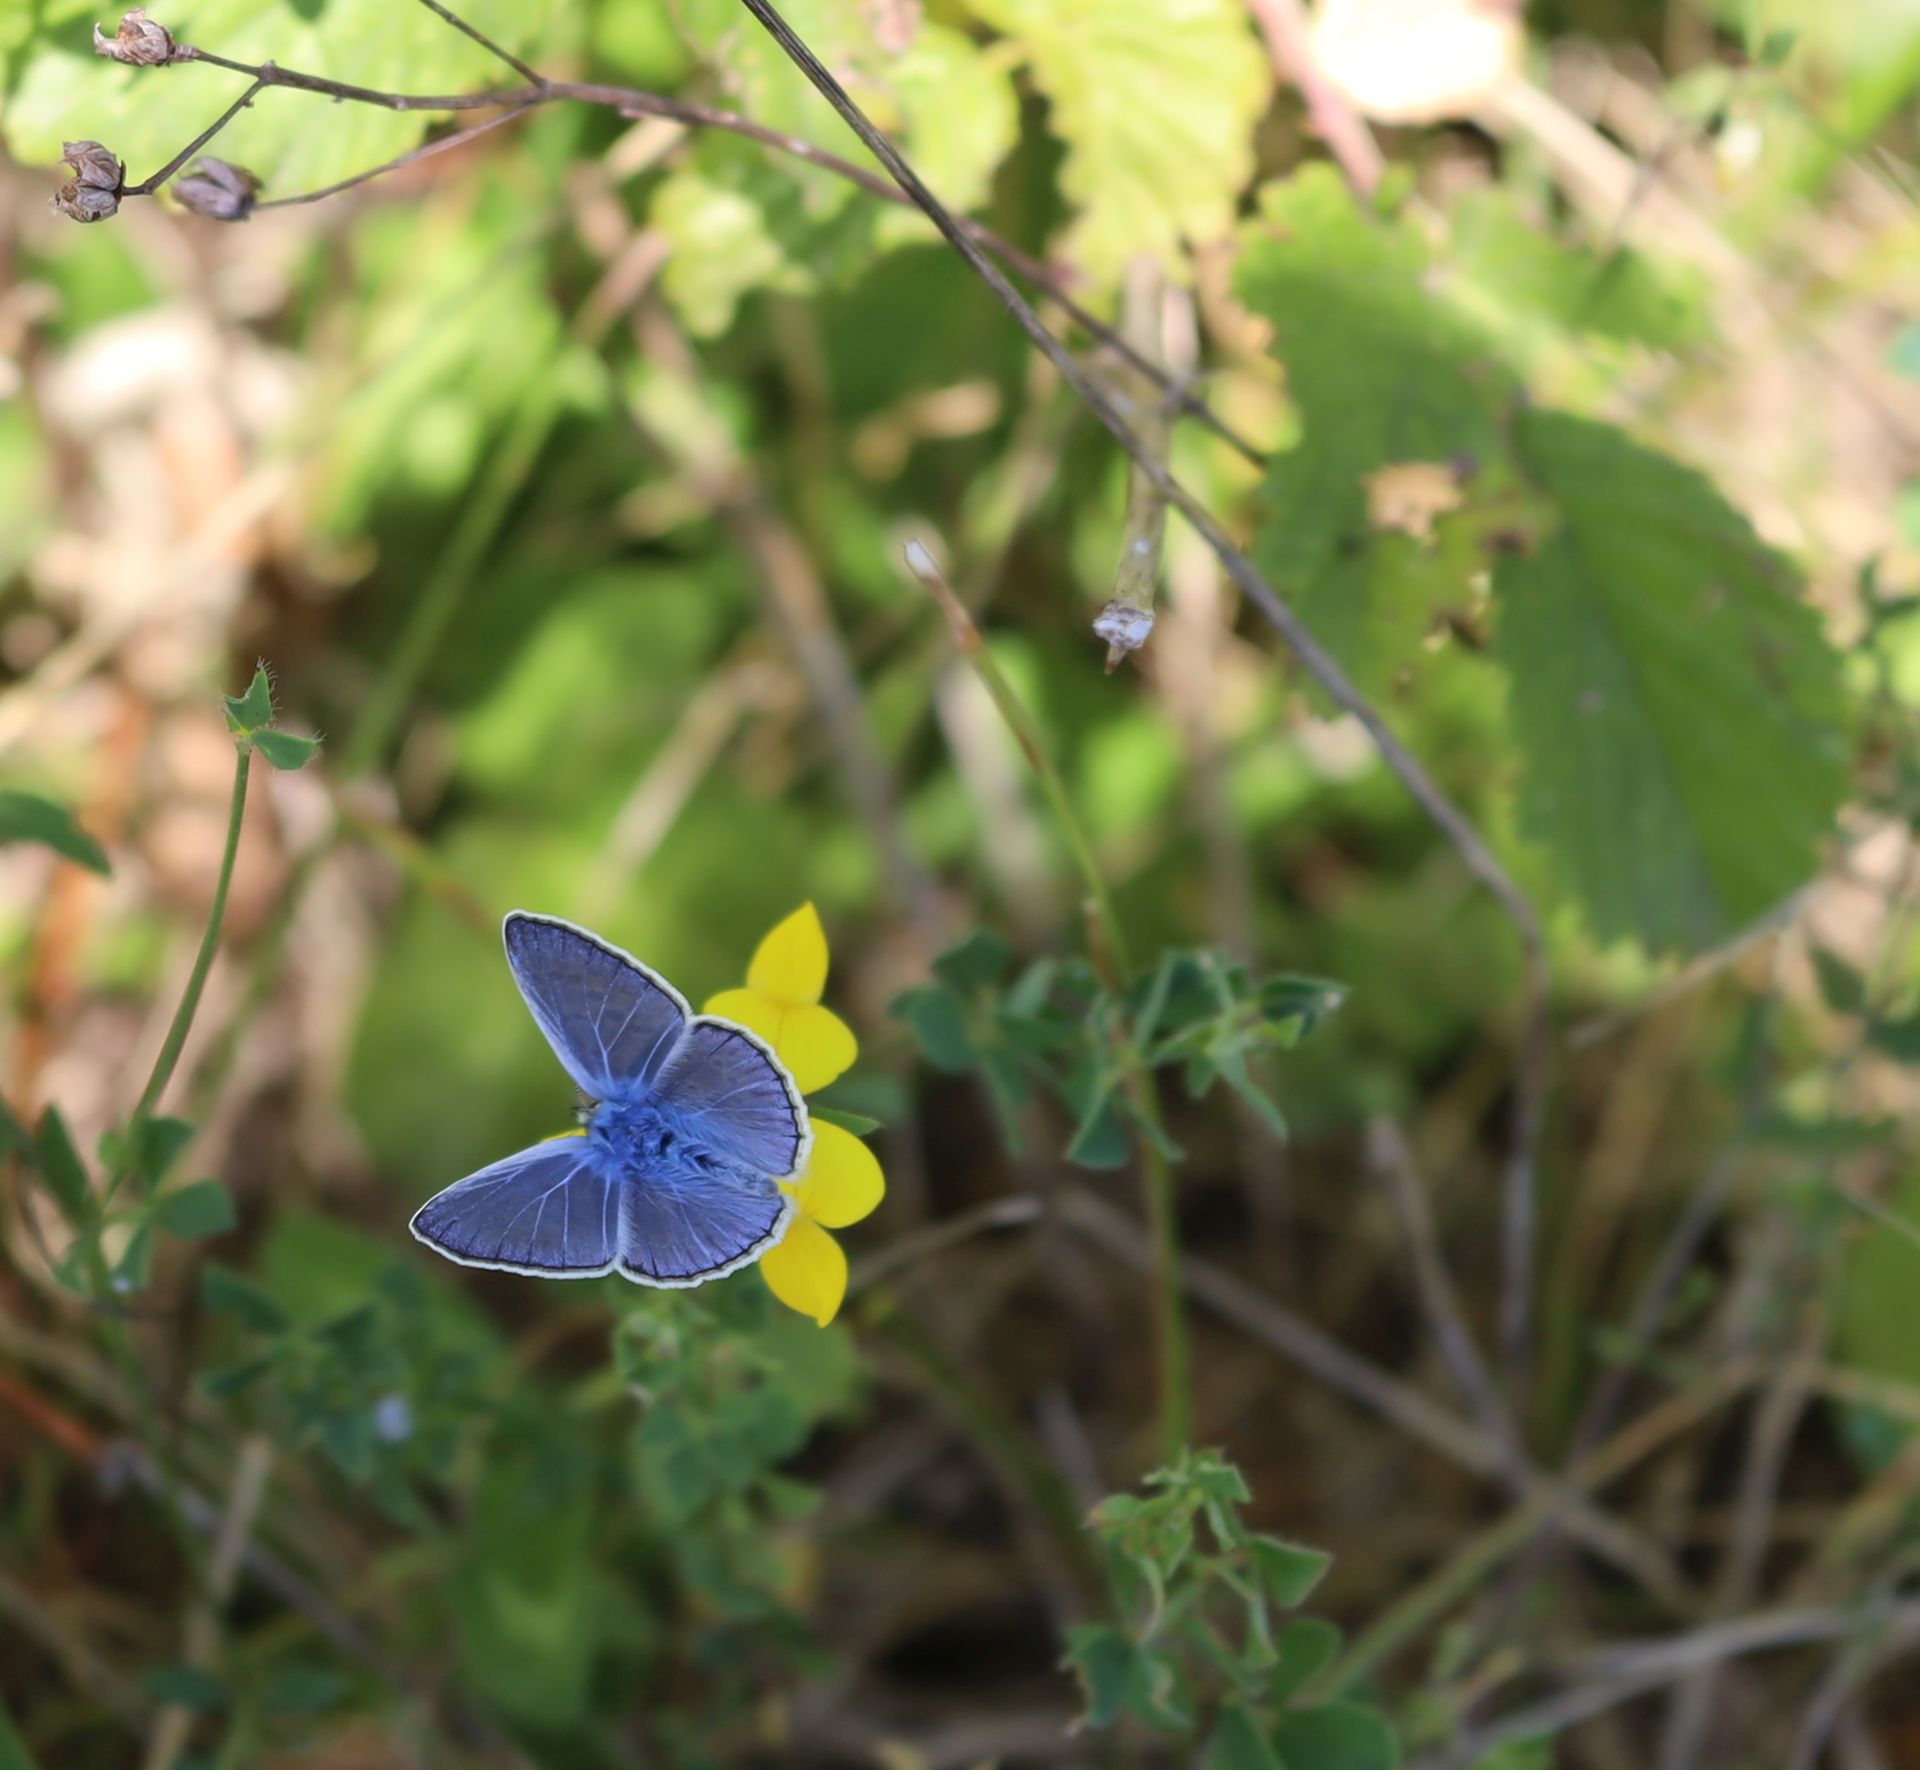 the little blue butterfly - little blue butterfly...